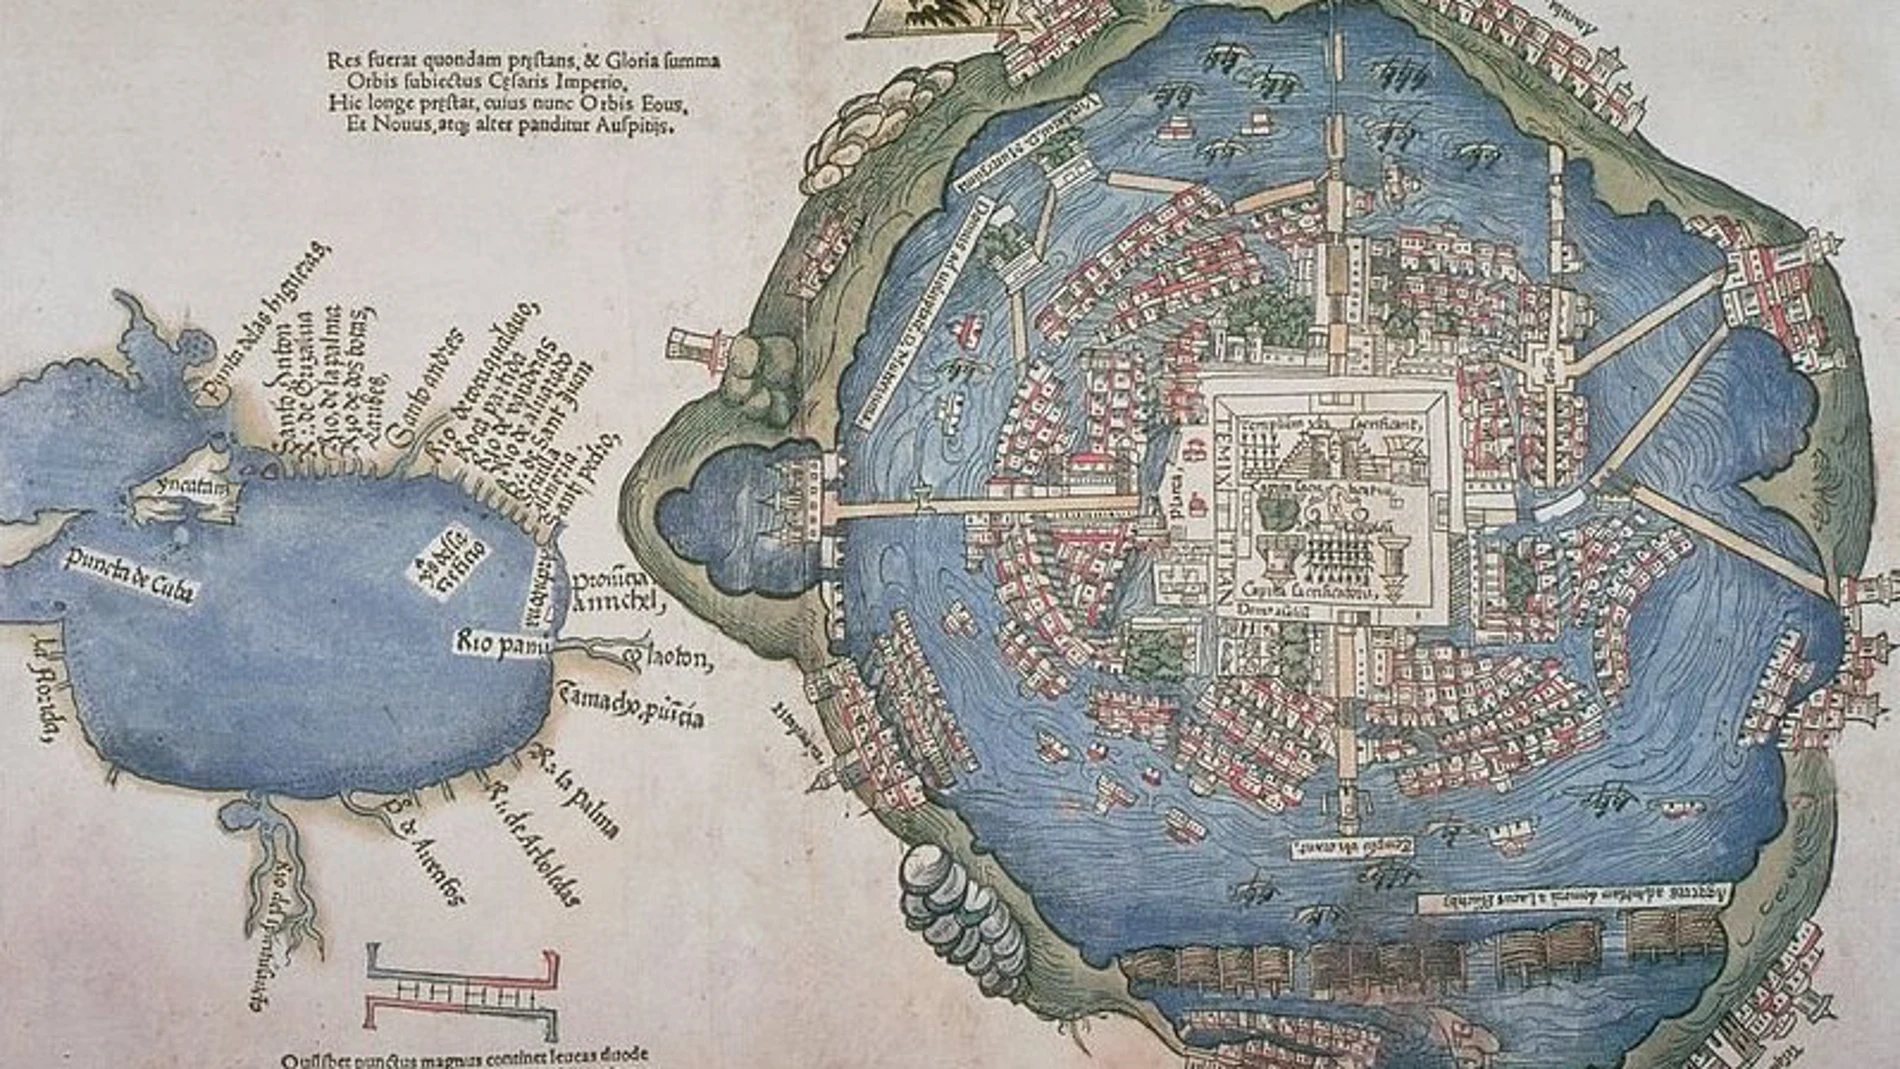 Mapa de Tenochtitlan, impreso en 1524 en Núremberg.